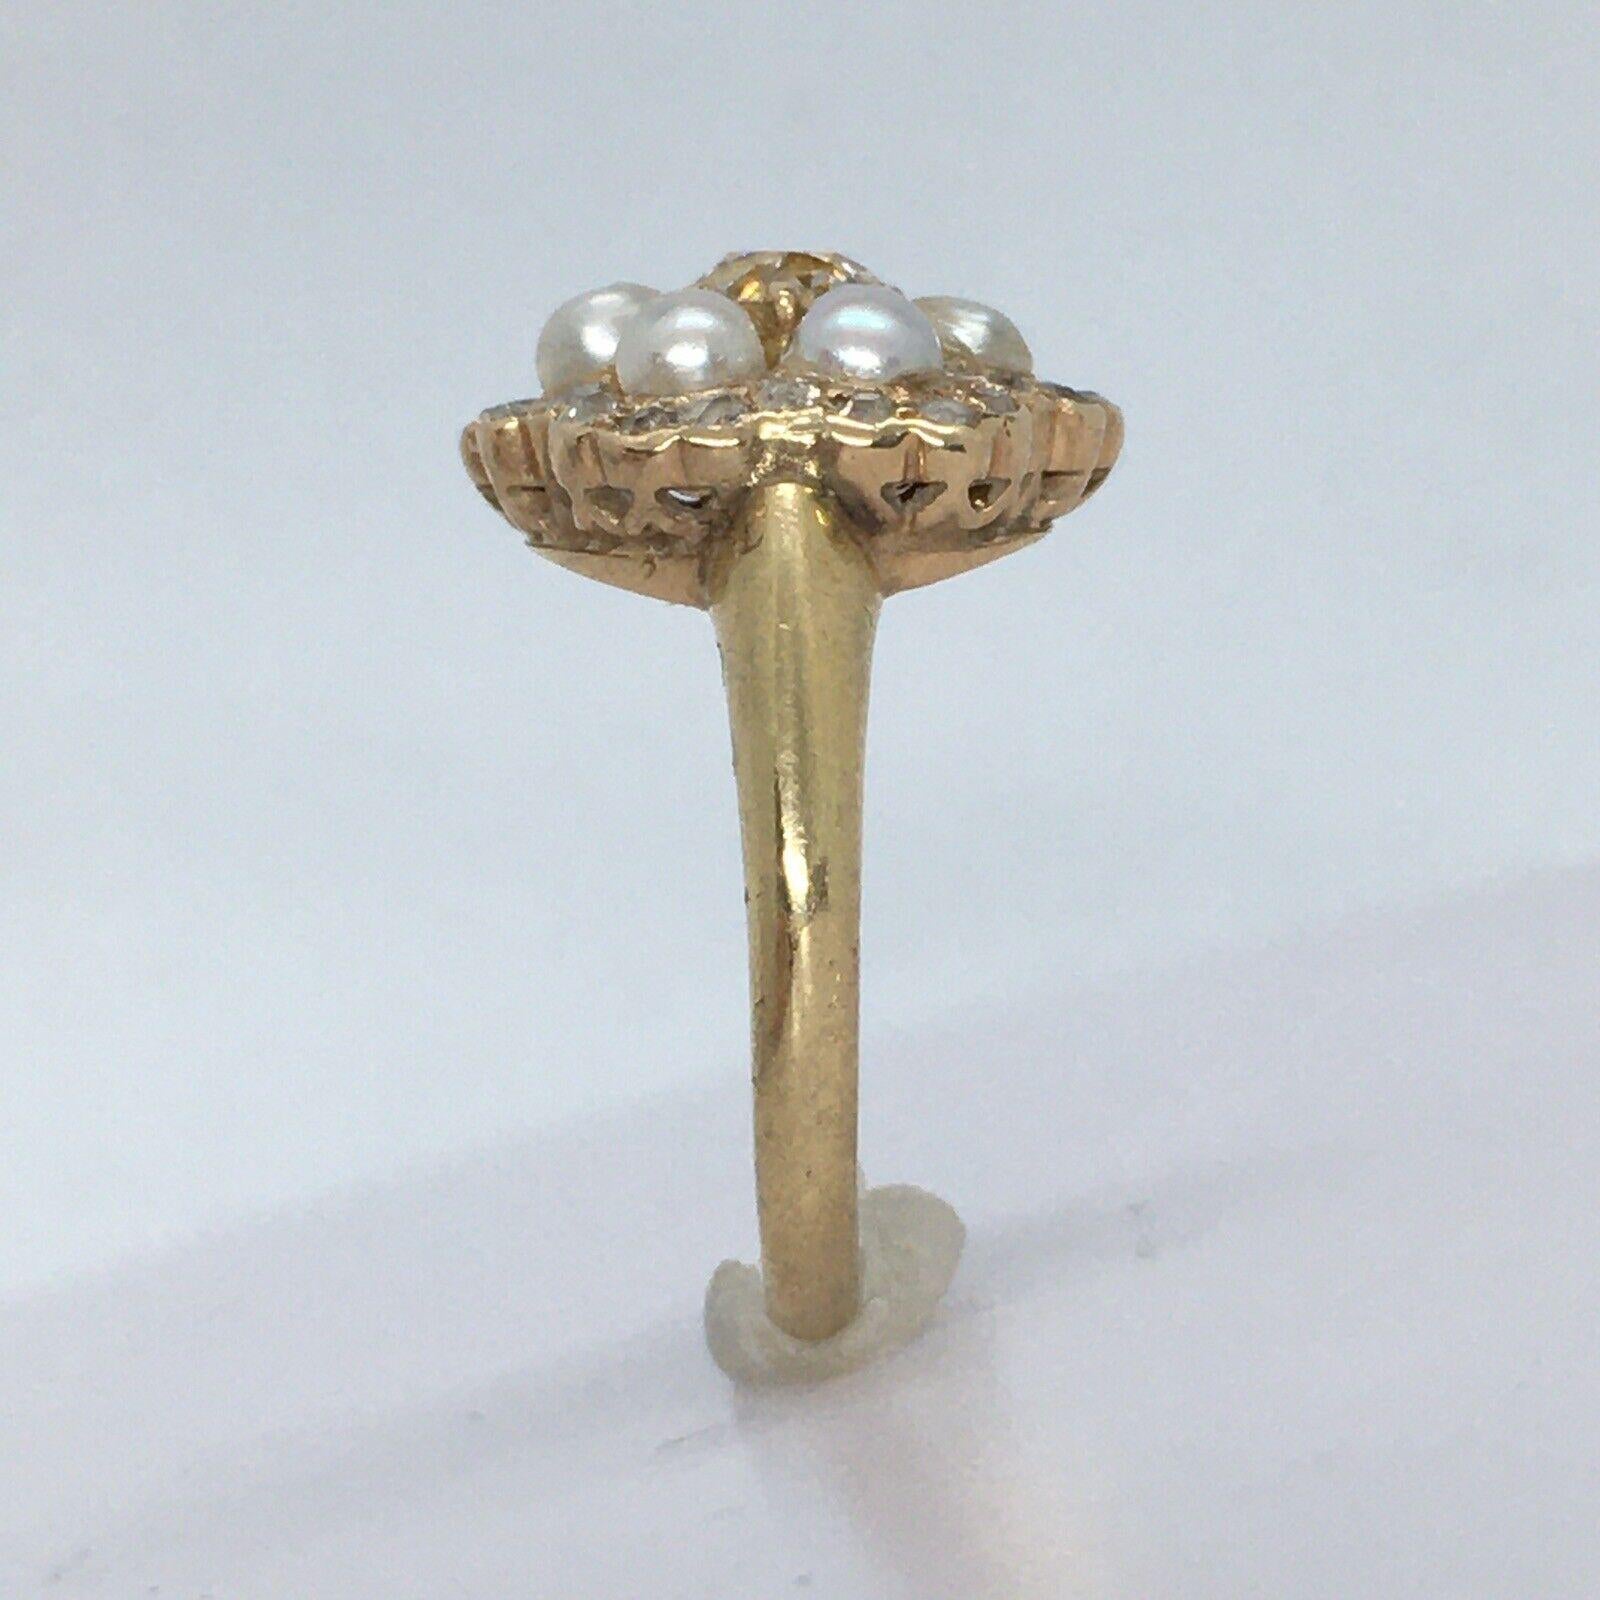 
Antique or jaune 14K 3/4 carat diamant perle américaine  Taille de l'anneau 6

Propriétaire âgé de 100 ans
 Taille 6
 Diamant central 5,2-5,3 mm de diamètre et 3,3 mm de profondeur, un peu plus de 1/2 carat de diamant taille ancienne. 
24 diamants